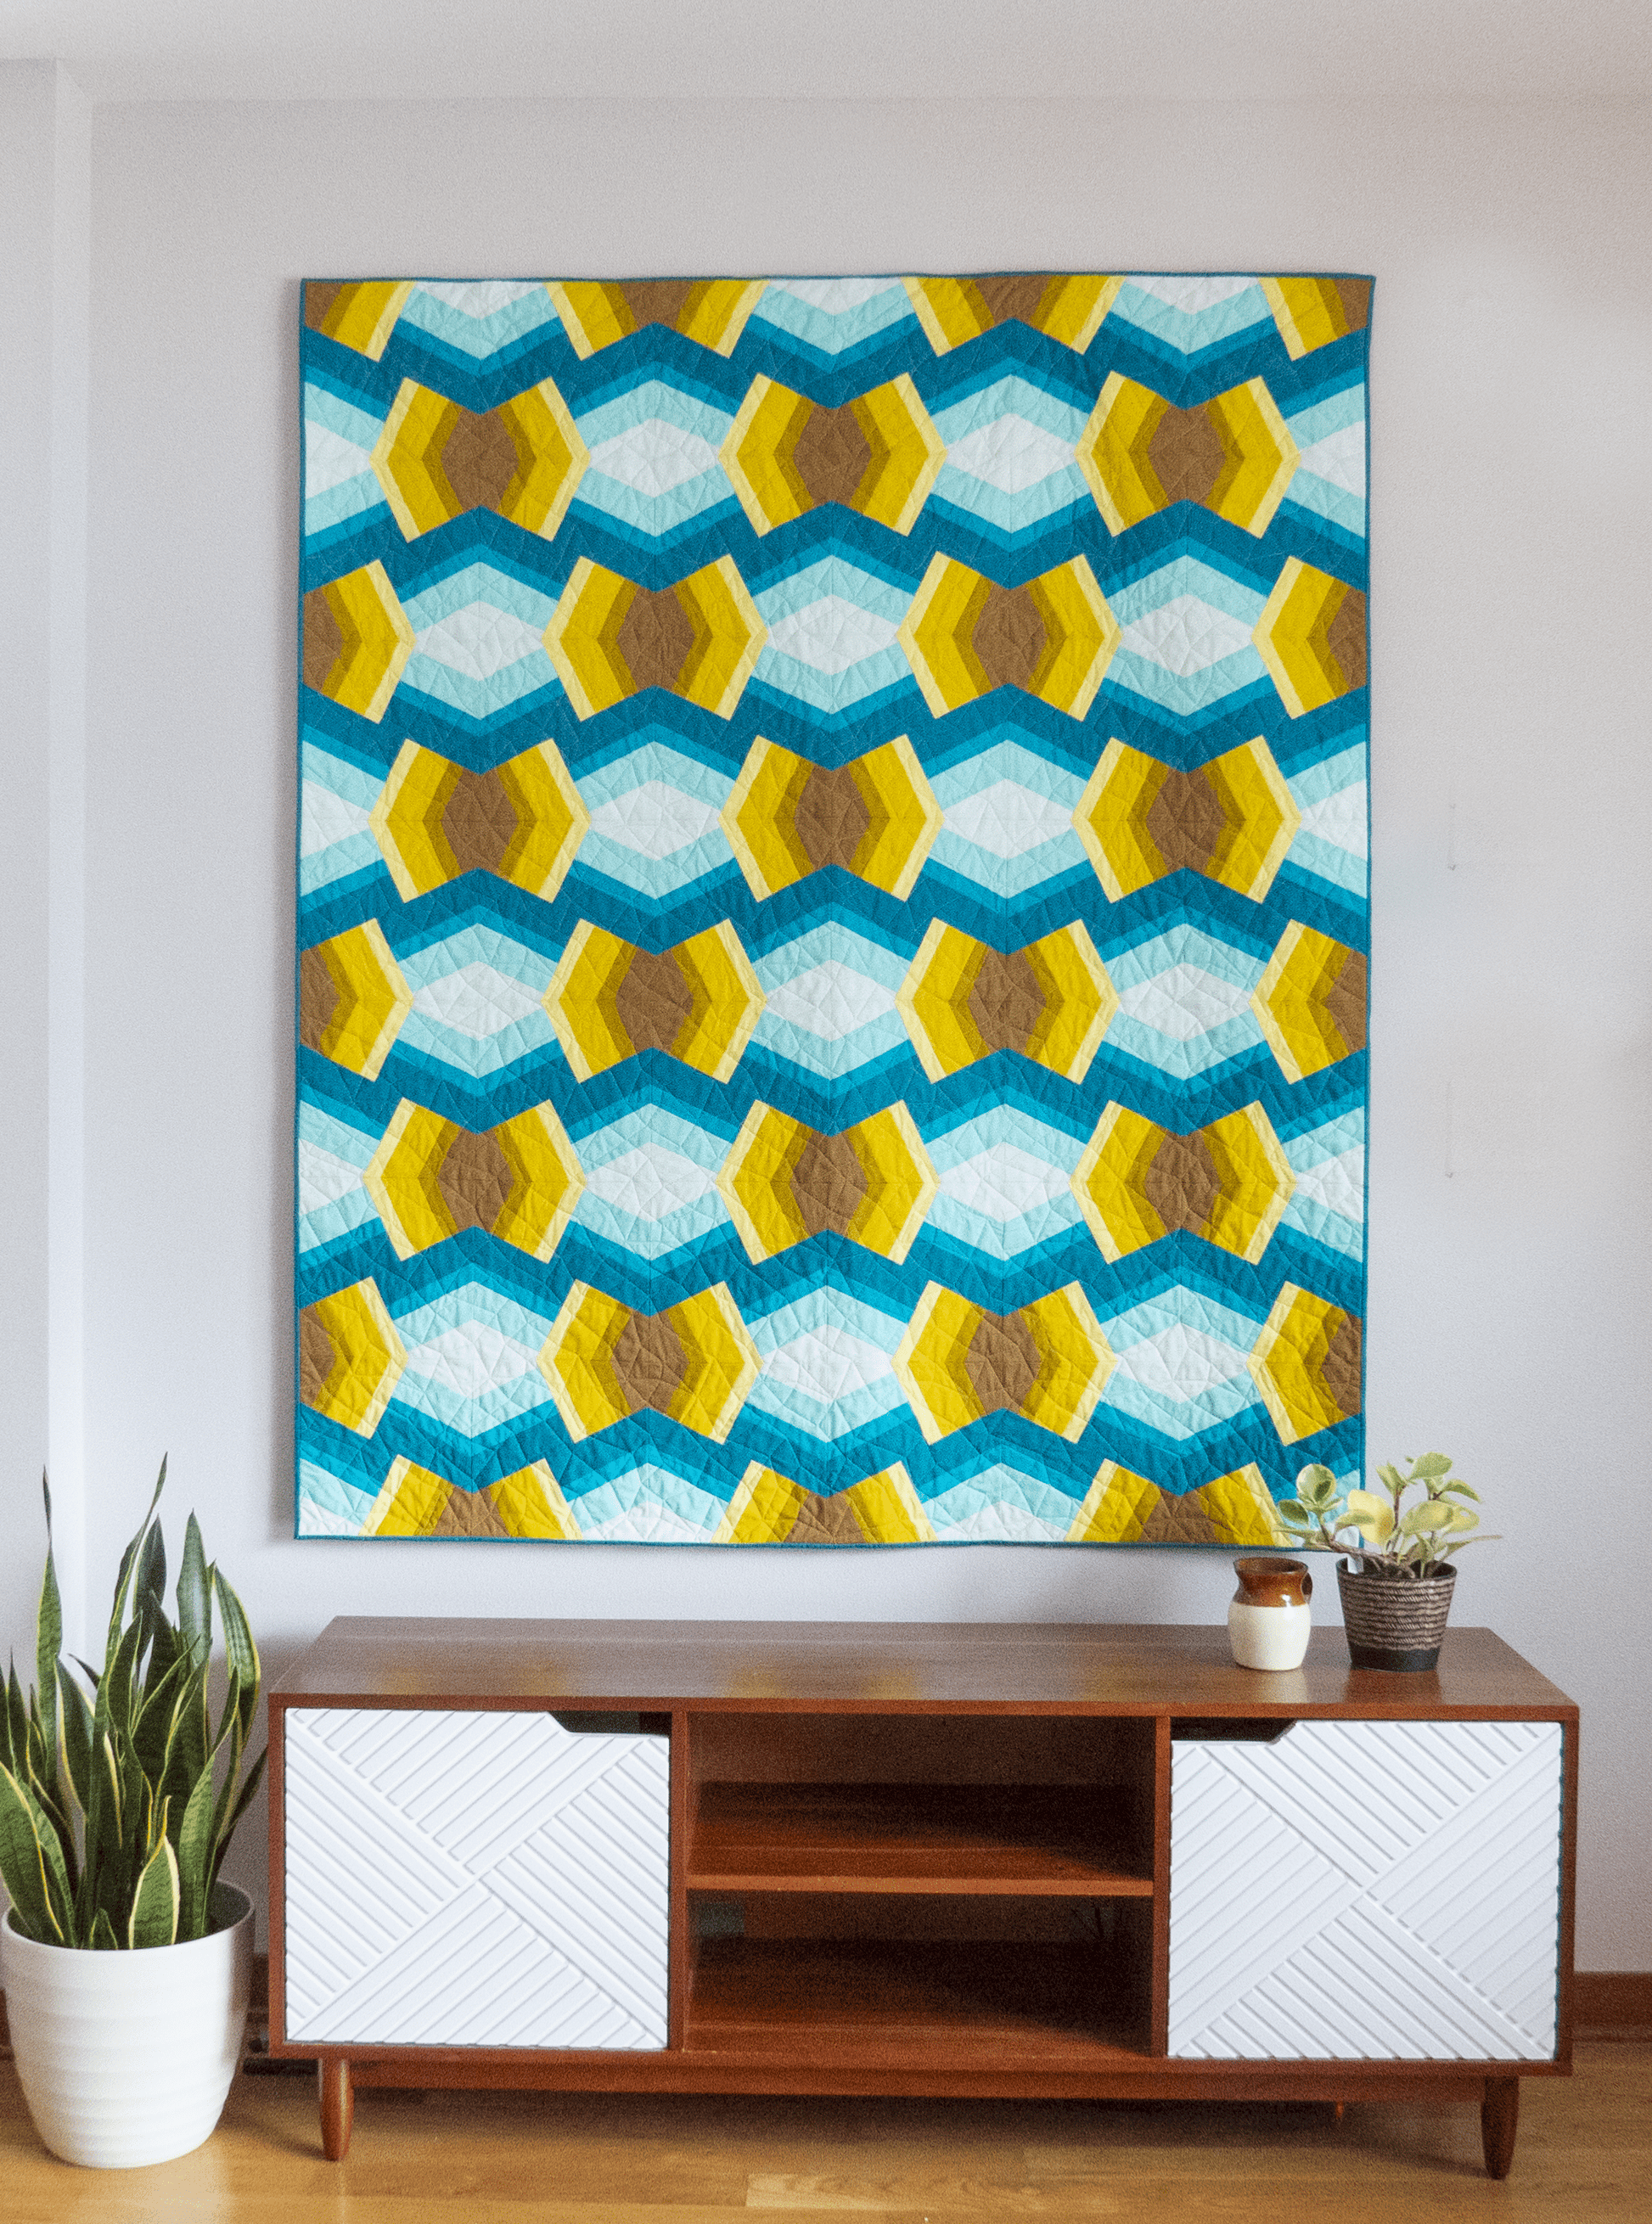 Bracken Quilt - Julia Wachs Designs - A teal and yellow Bracken quilt hangs on a gray wall.